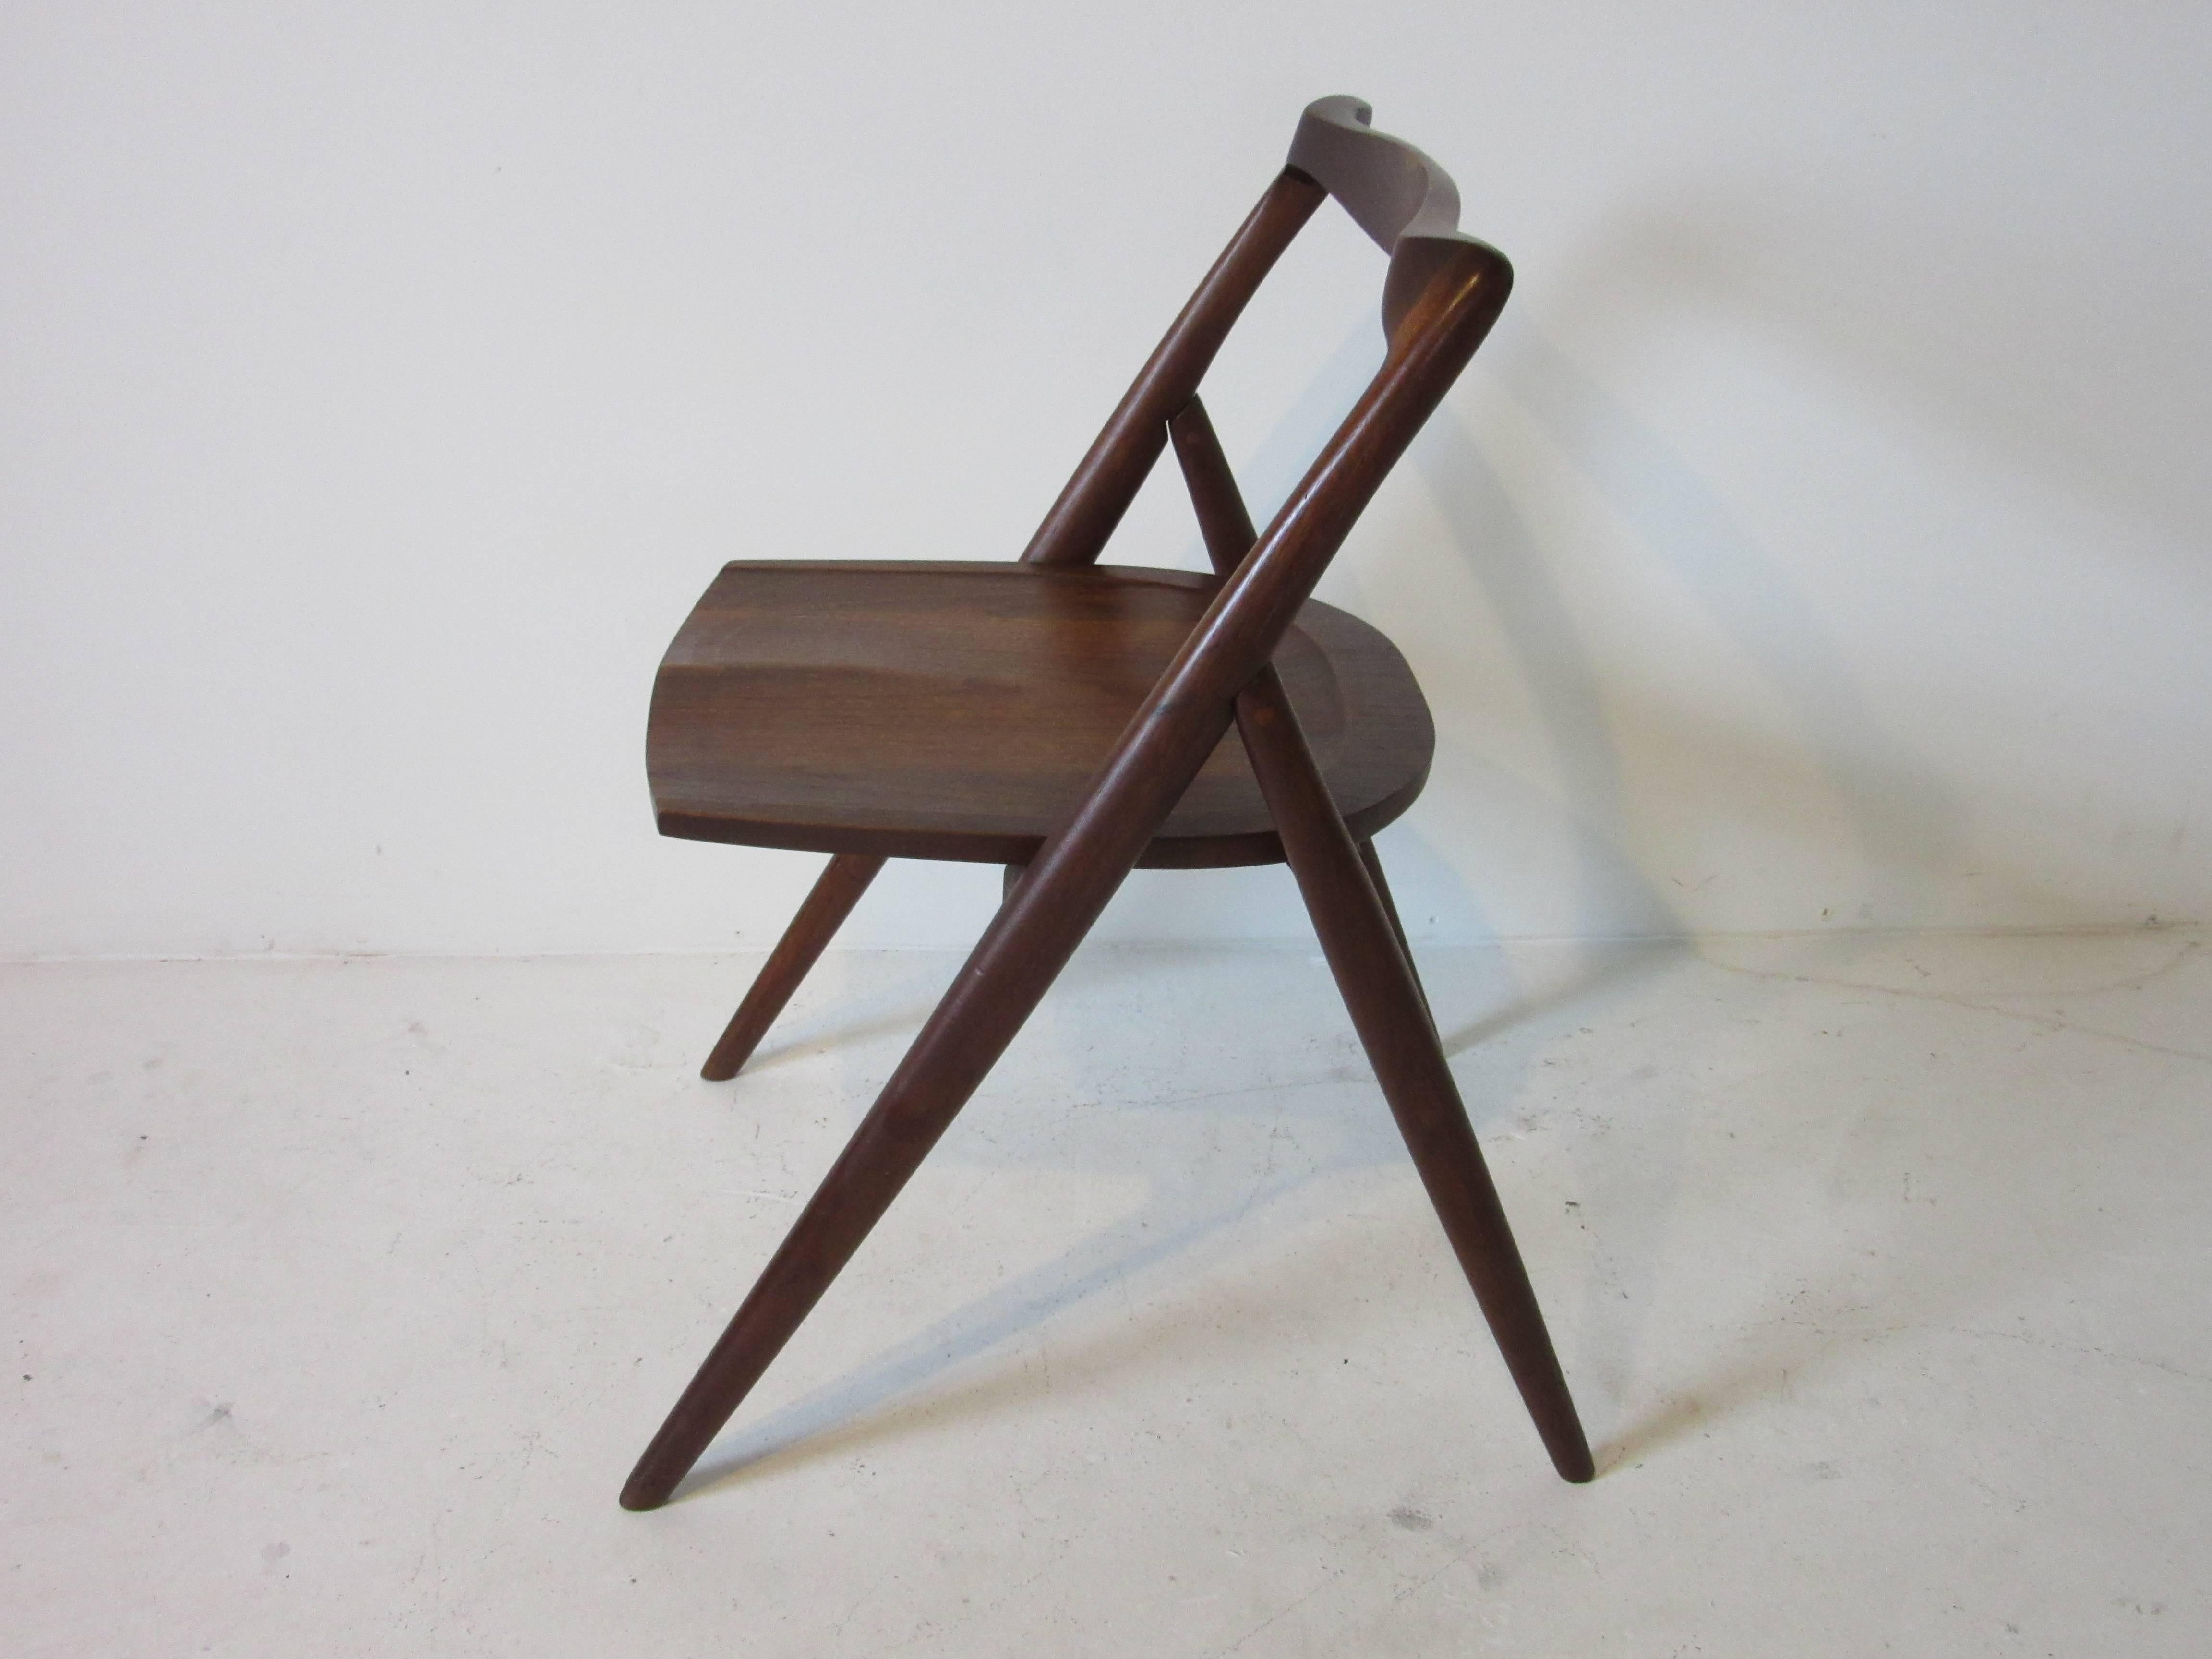 Une chaise sculpturale en noyer américain noir huilé, réalisée en studio à la manière de George Nakashima, conçue et fabriquée par l'Américain d'origine japonaise George Suyeoka, constructeur de meubles, artiste et écrivain. Vivant à Chicago, George